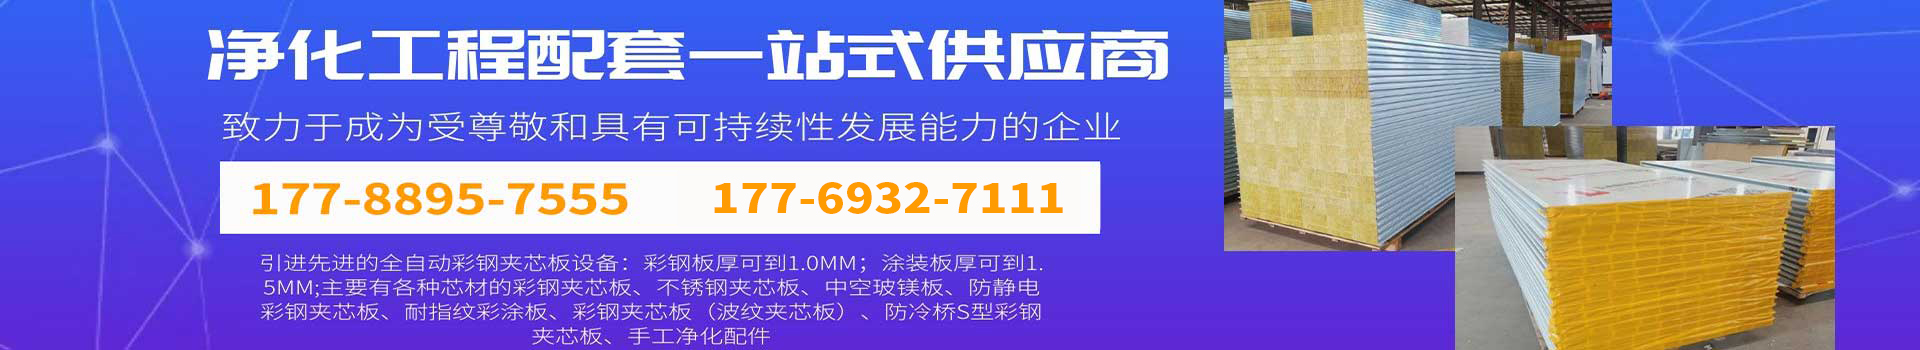 米乐app(中国)官方网站